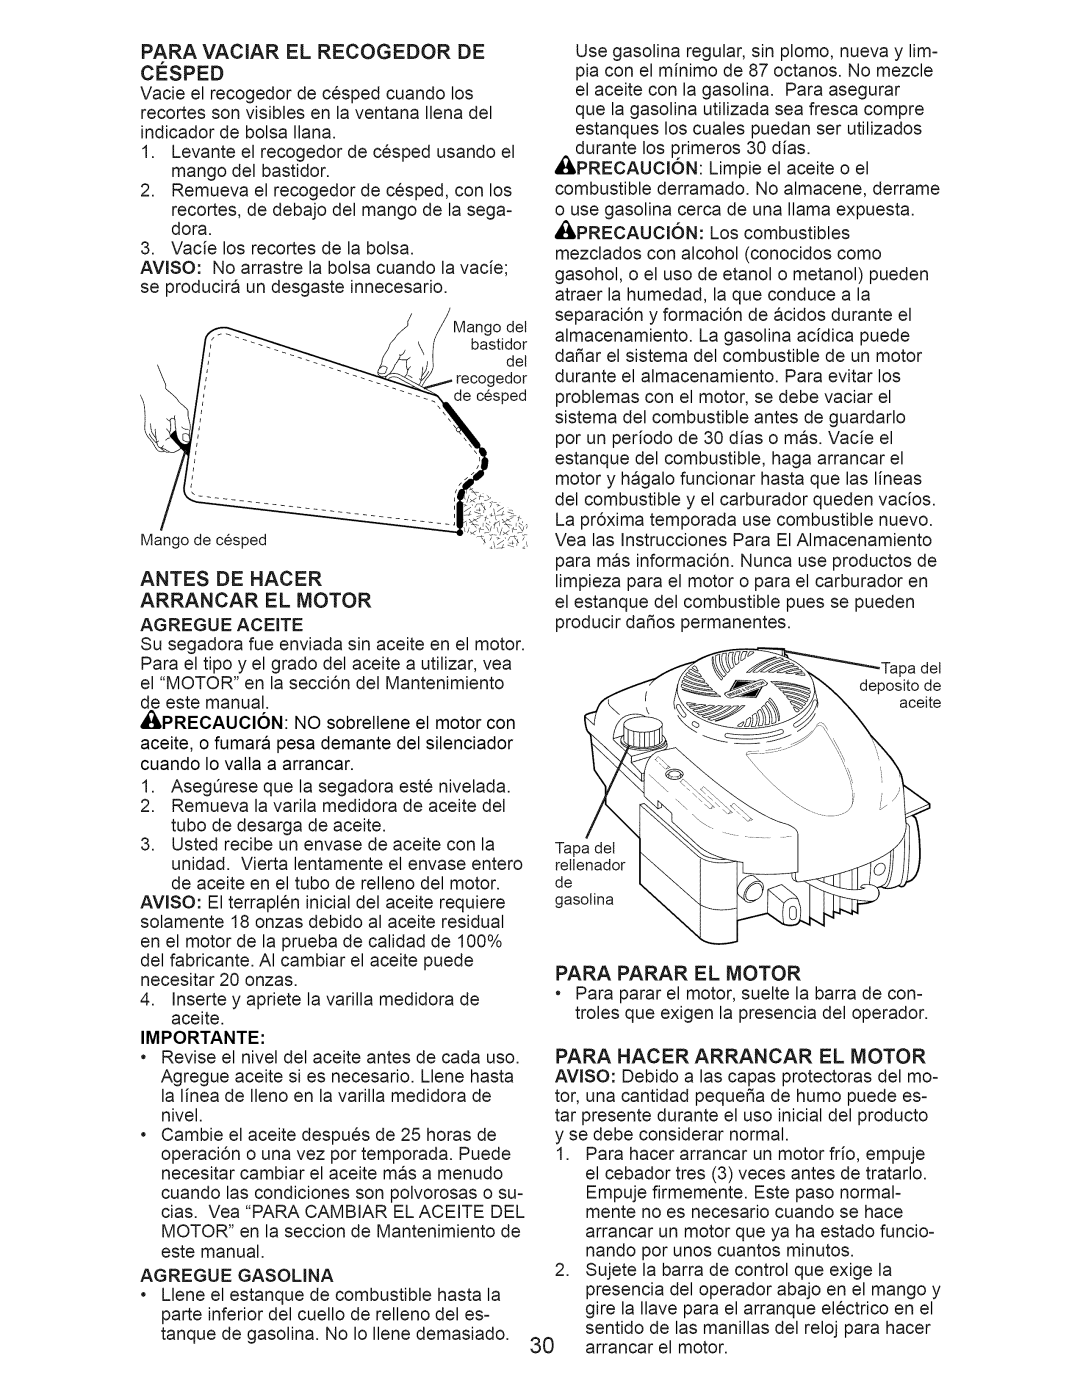 Craftsman 917.374364 manual Antes De Hacer Arrancar El Motor, Para Parar El Motor 